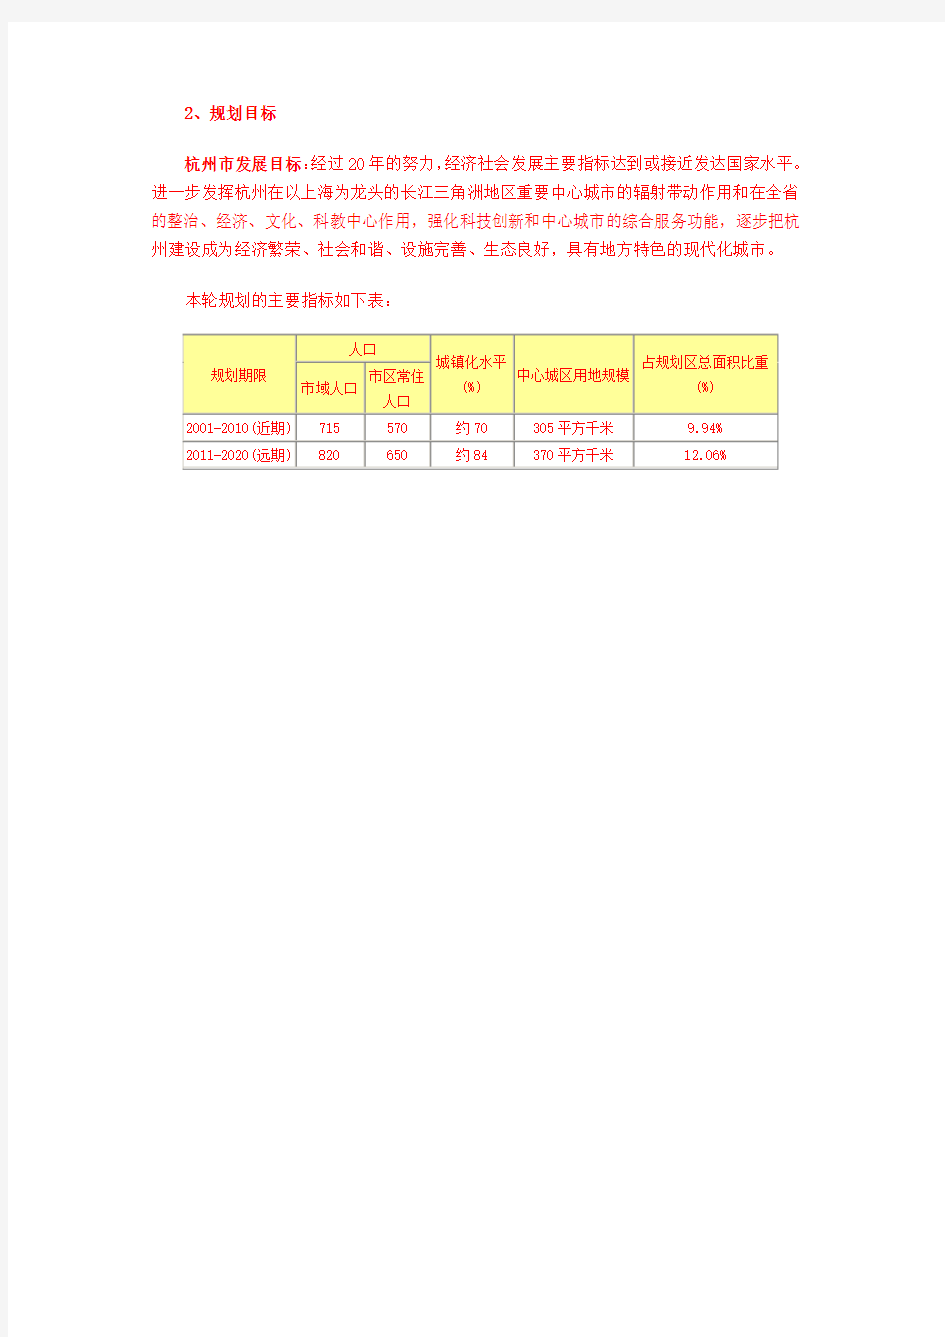 杭州市城市总体规划(2001-2020)